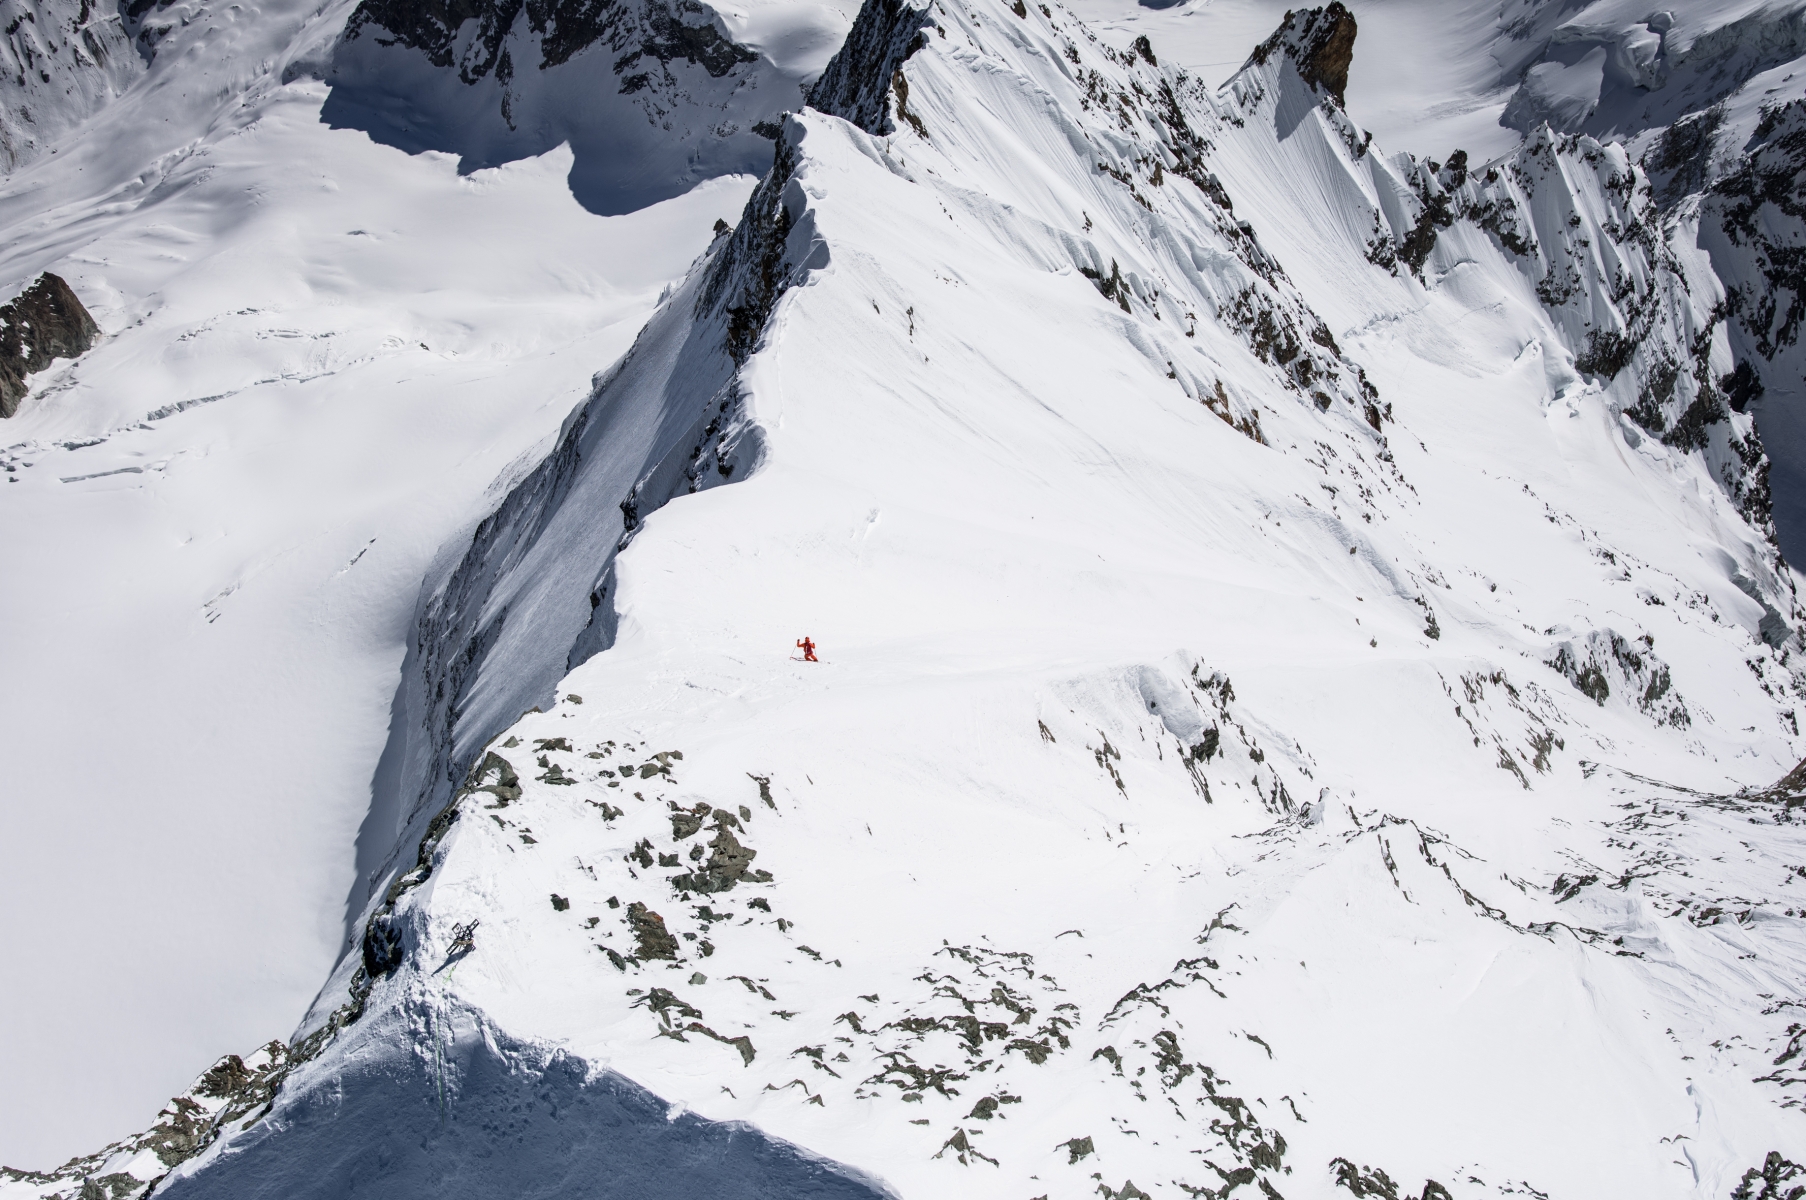 Le film nous emmène notamment sur les pentes de la Dent-Blanche avec le guide de montagne et skieur de pentes raides Gilles Sierro.